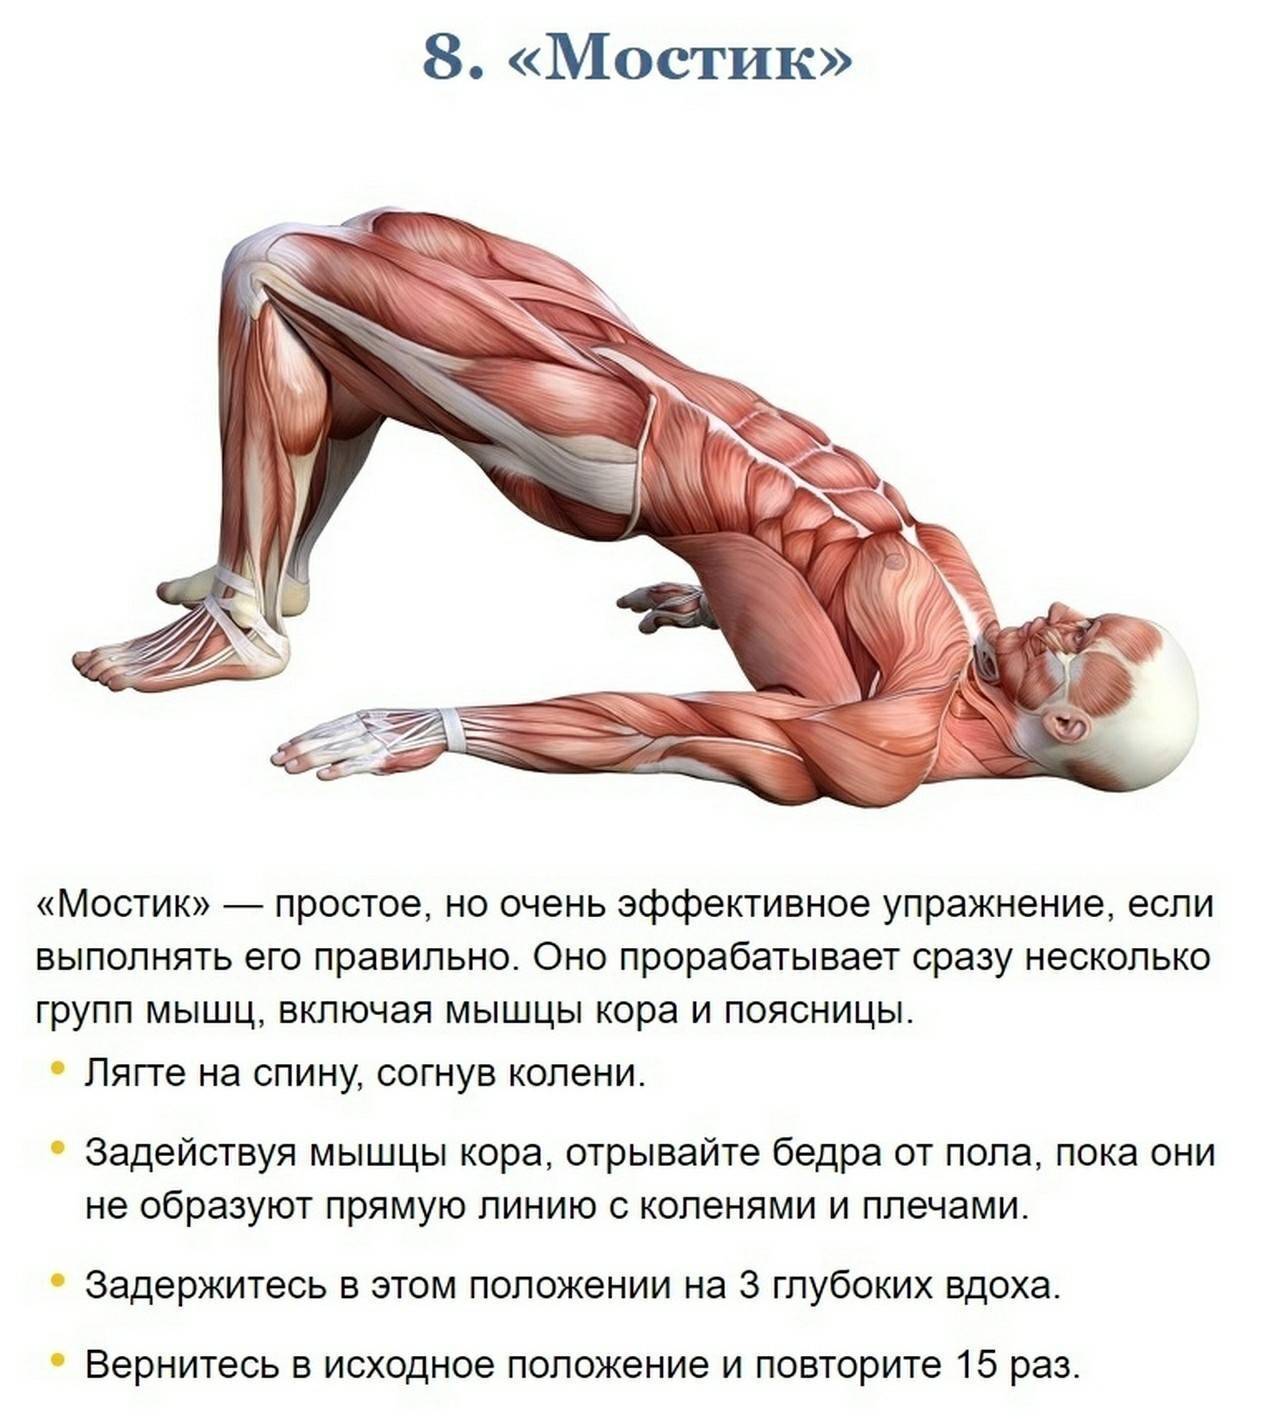 Что такое мышцы кора, где находяться, упражнения для тренировки мышц кора в домашних условиях